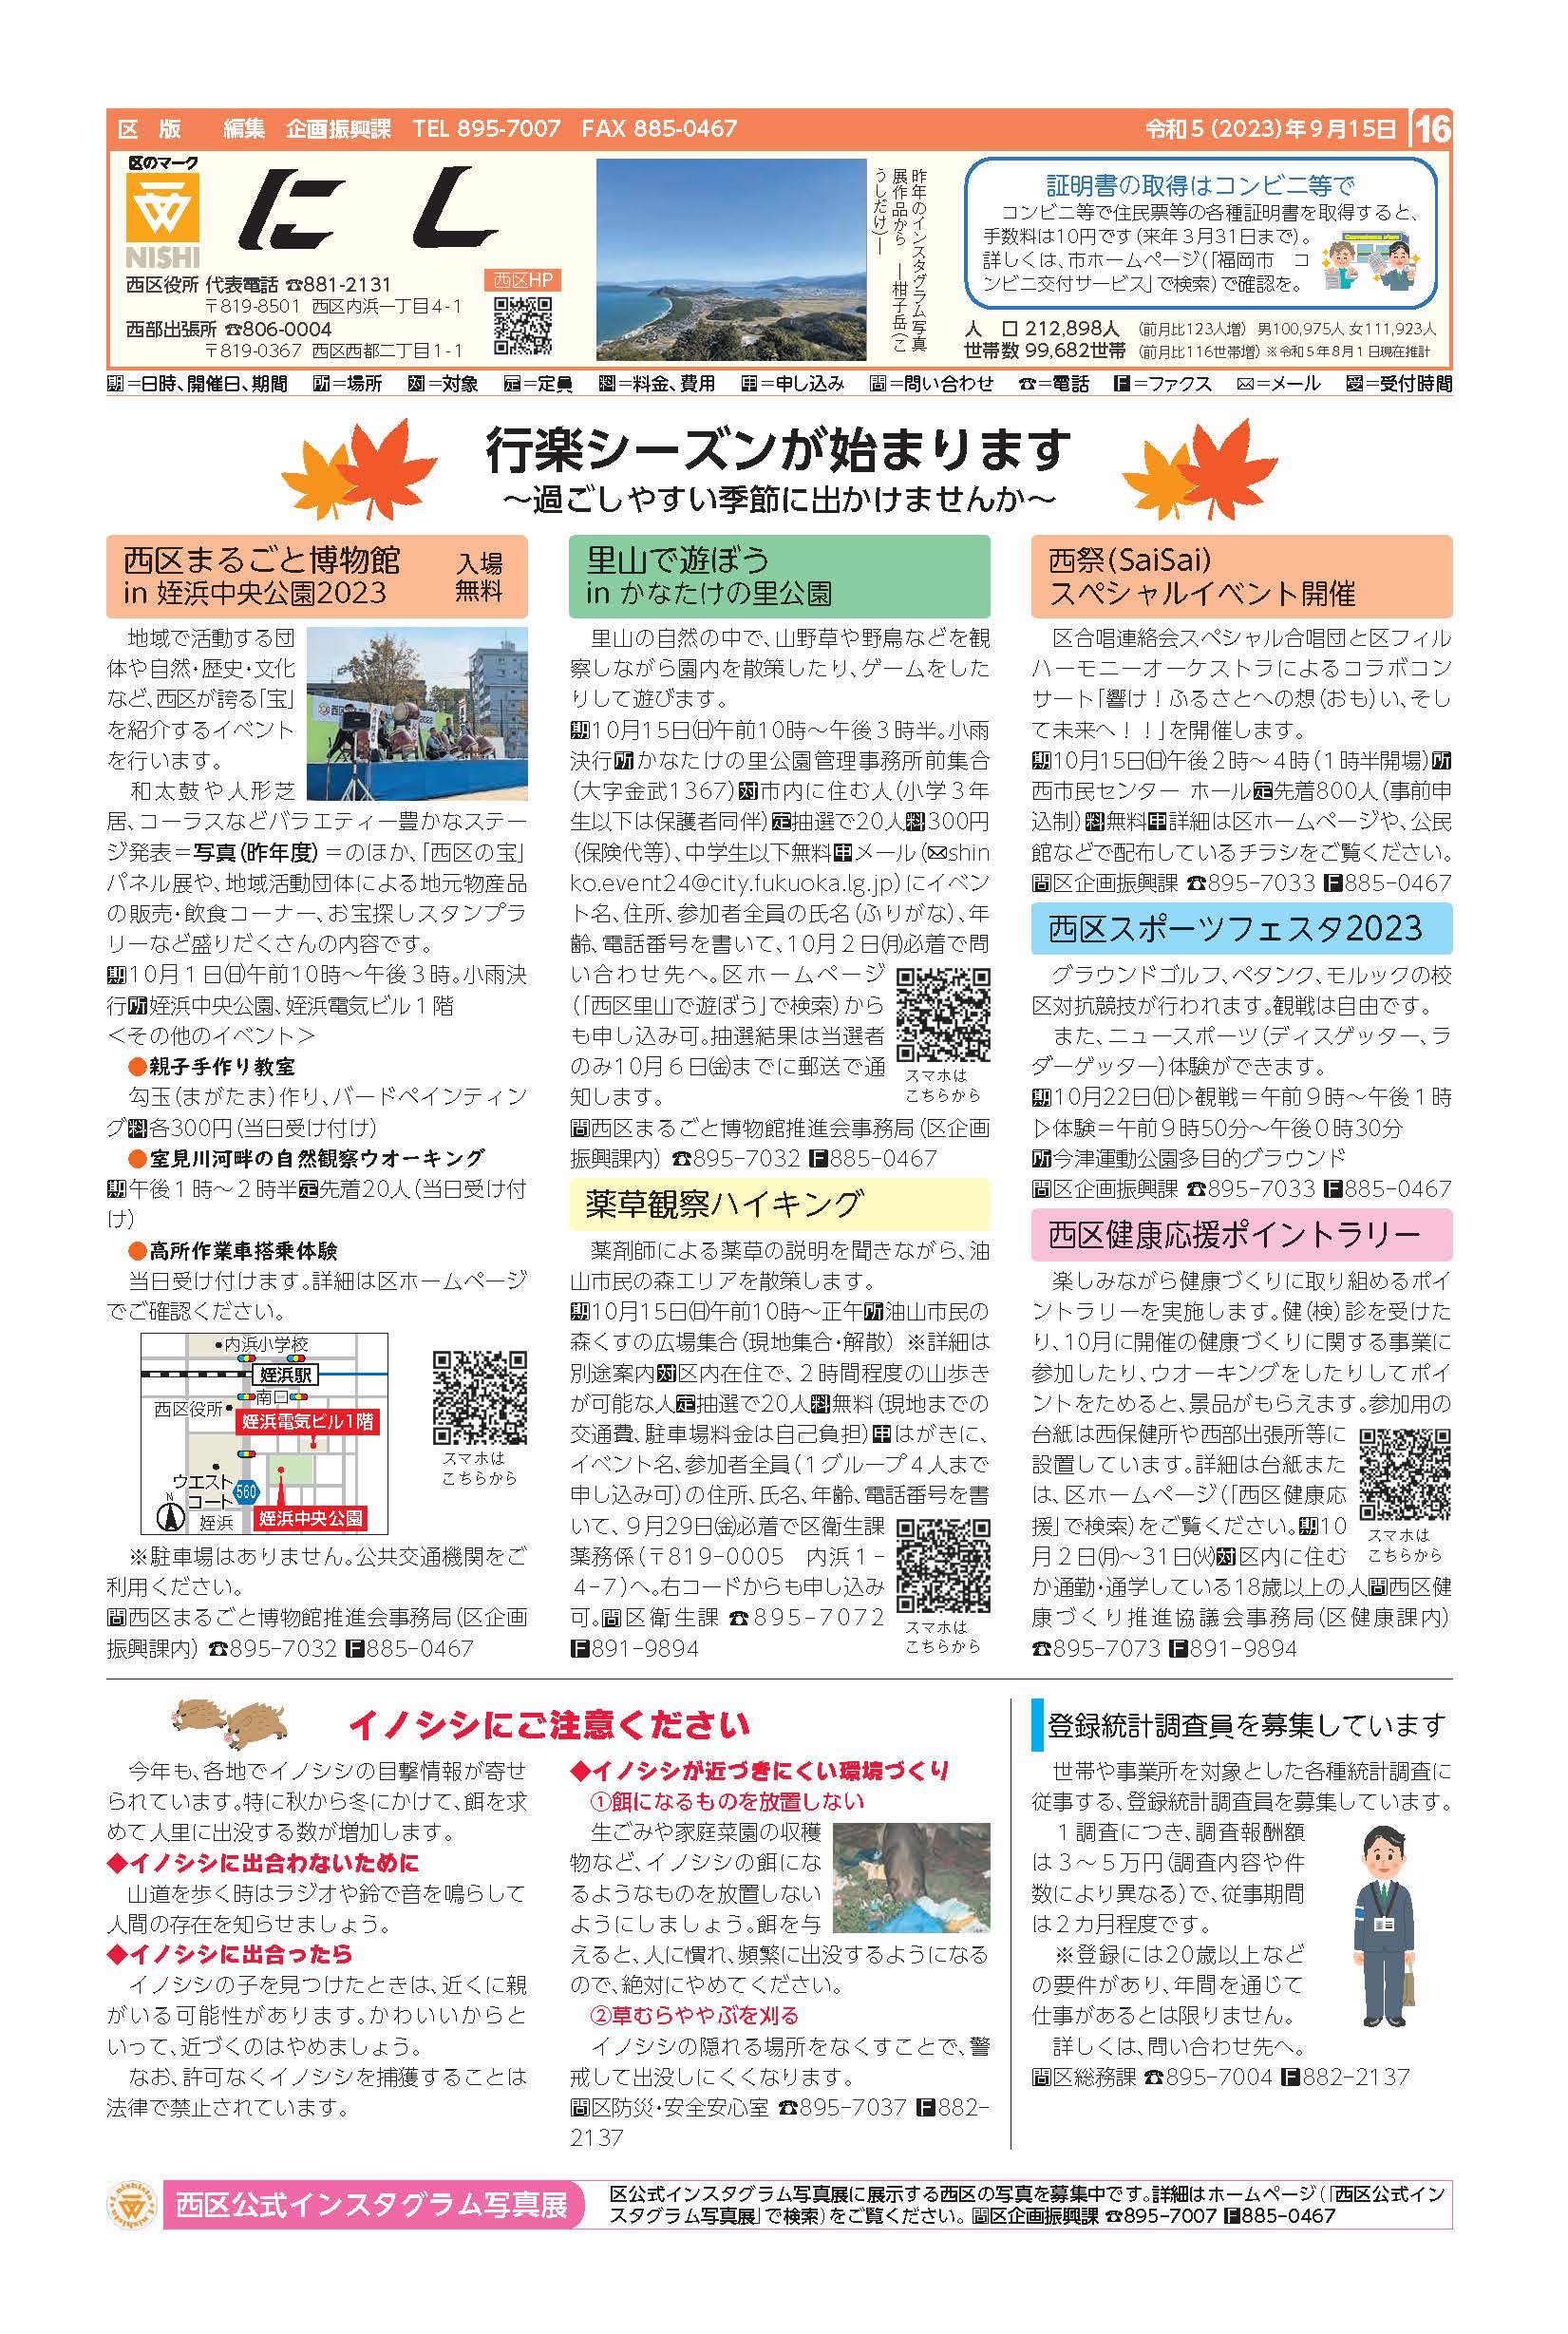 福岡市政だより2023年9月15日号の西区版の紙面画像